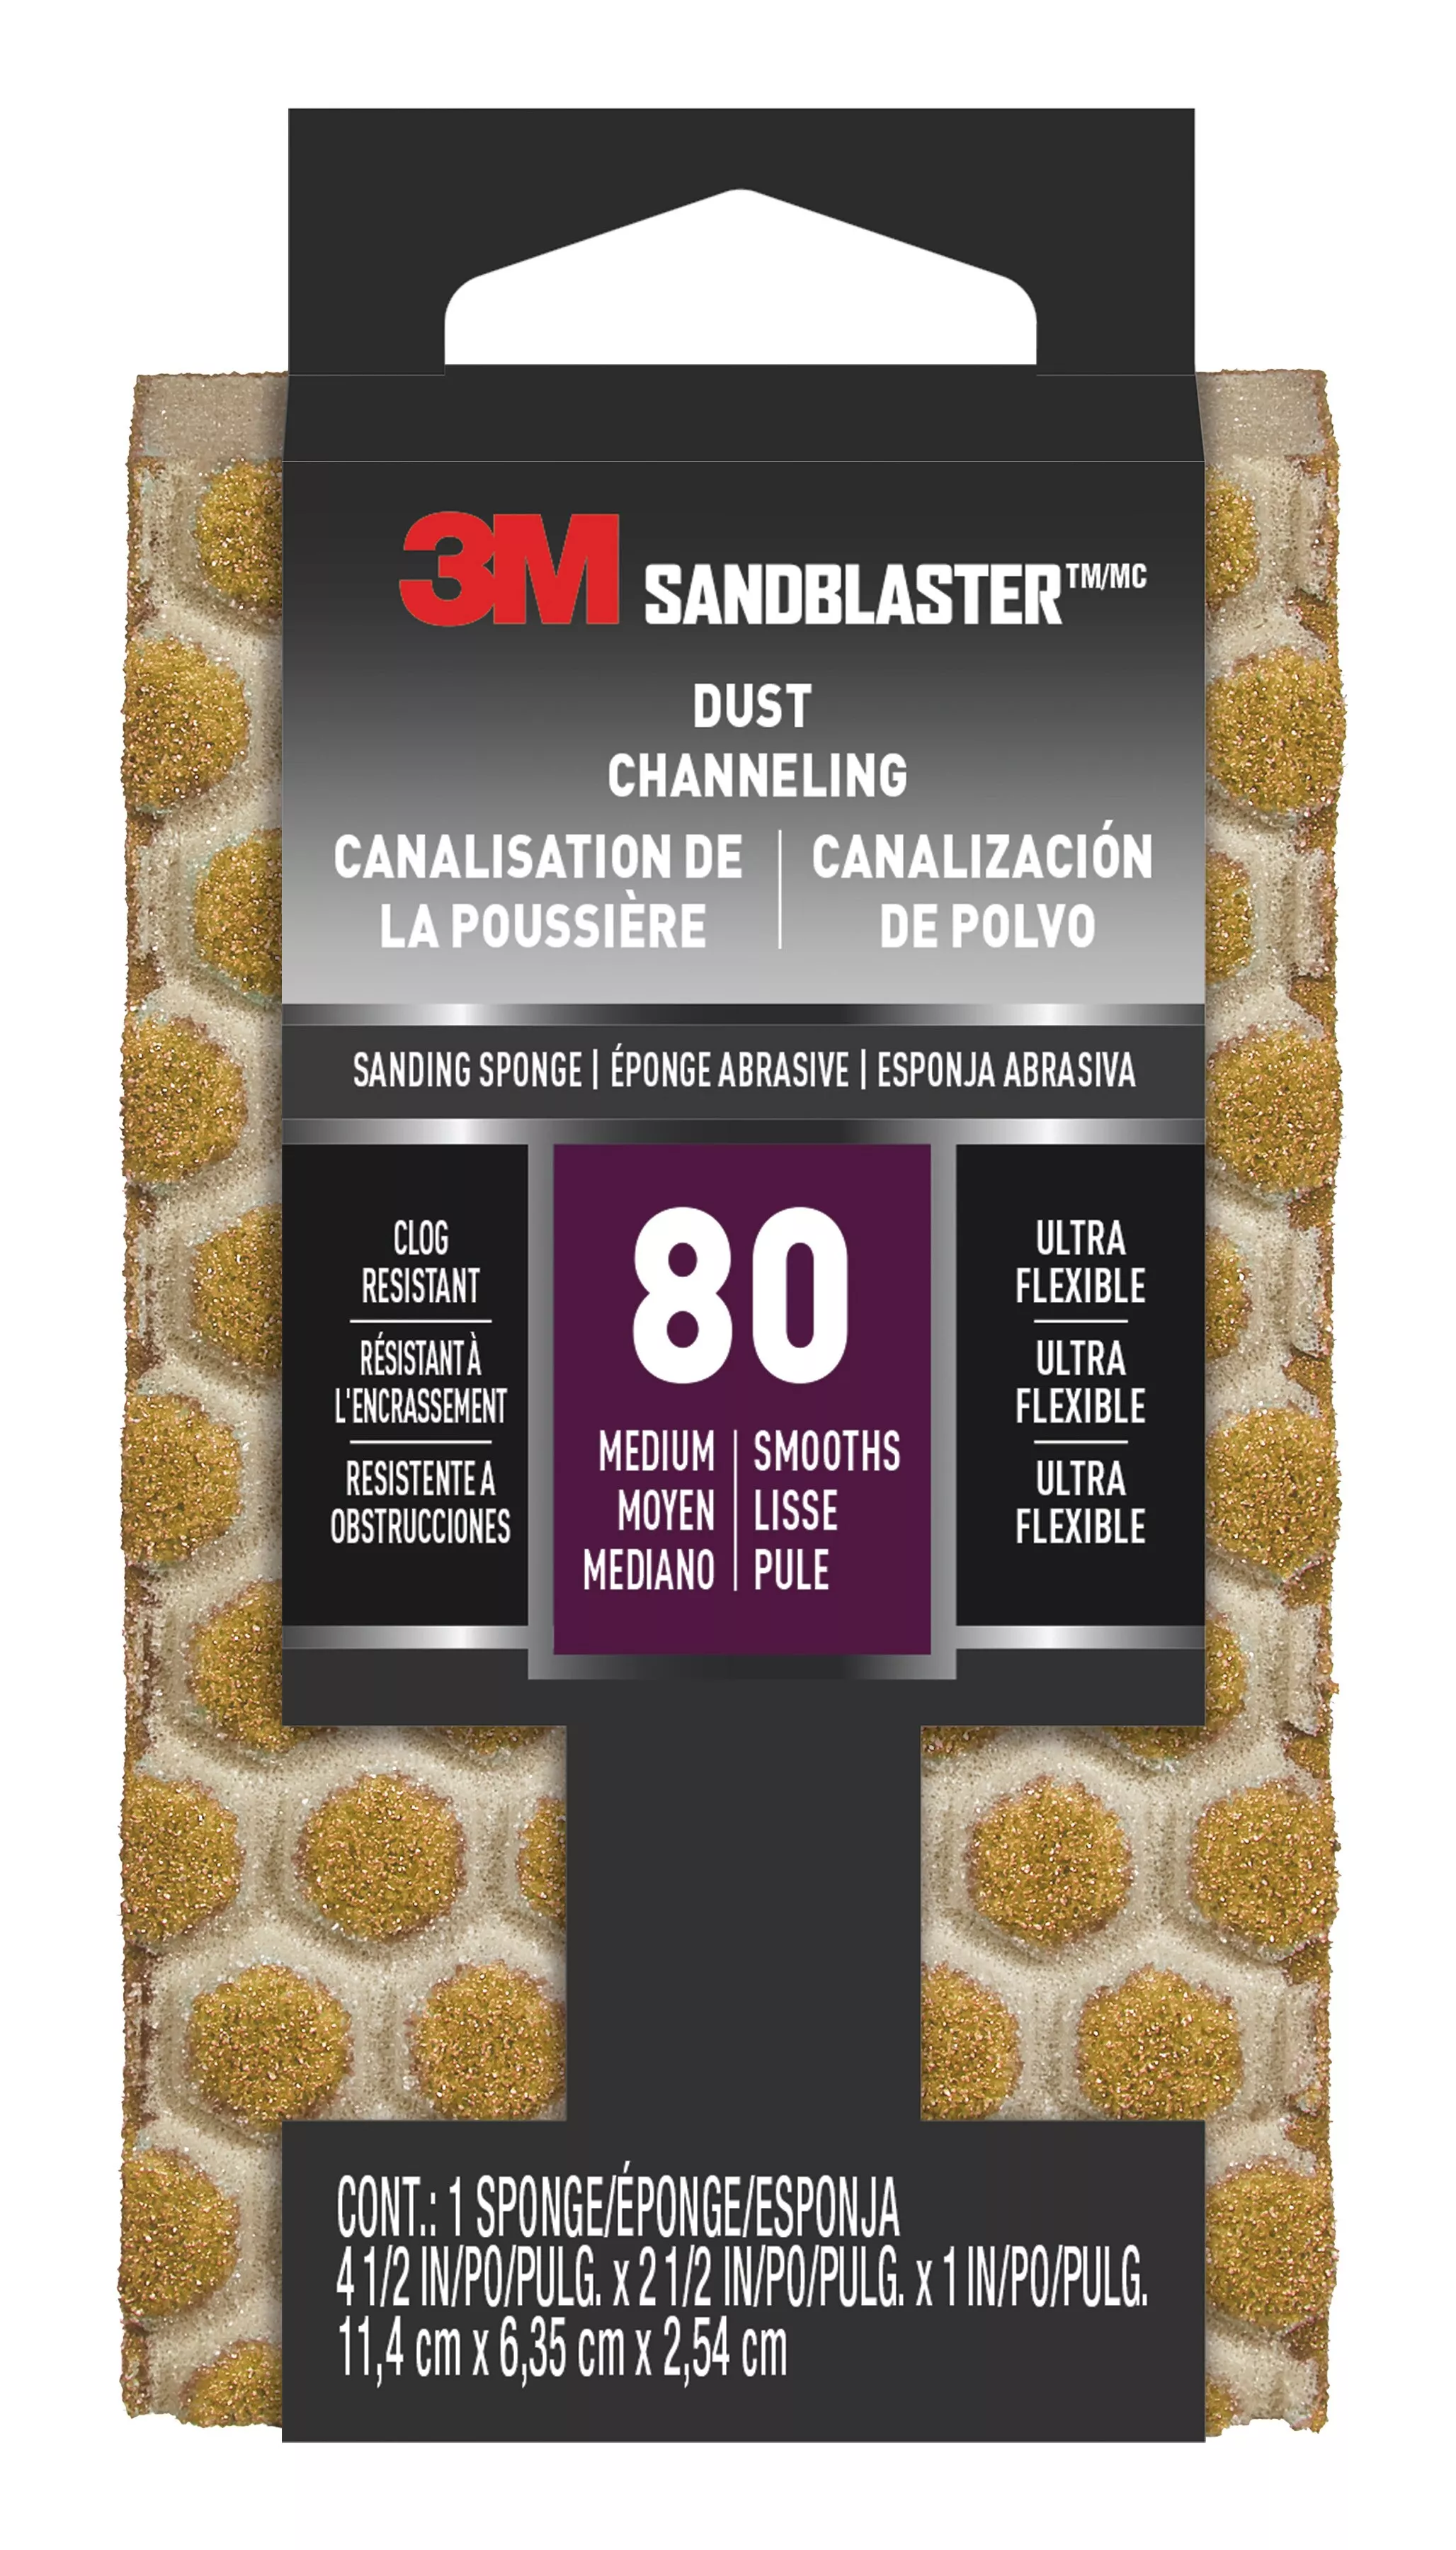 3M™ SandBlaster™ DUST CHANNELING Sanding Sponge, 20908-80-UFS ,80 grit,
4 1/2 in x 2 1/2 x 1 in, 10/case